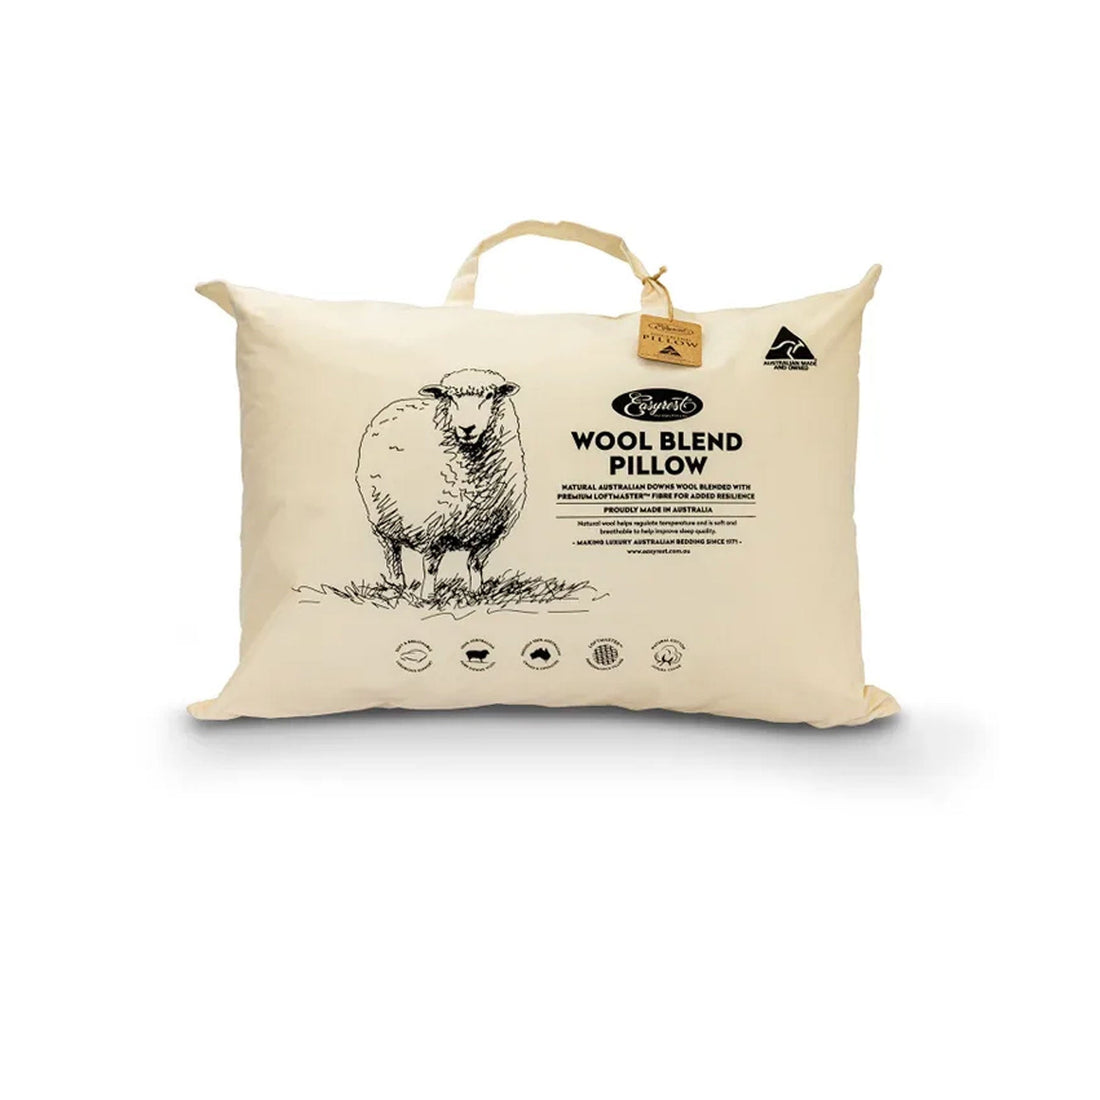 Wool Blend Standard Pillow in Fabric Bag 47x72